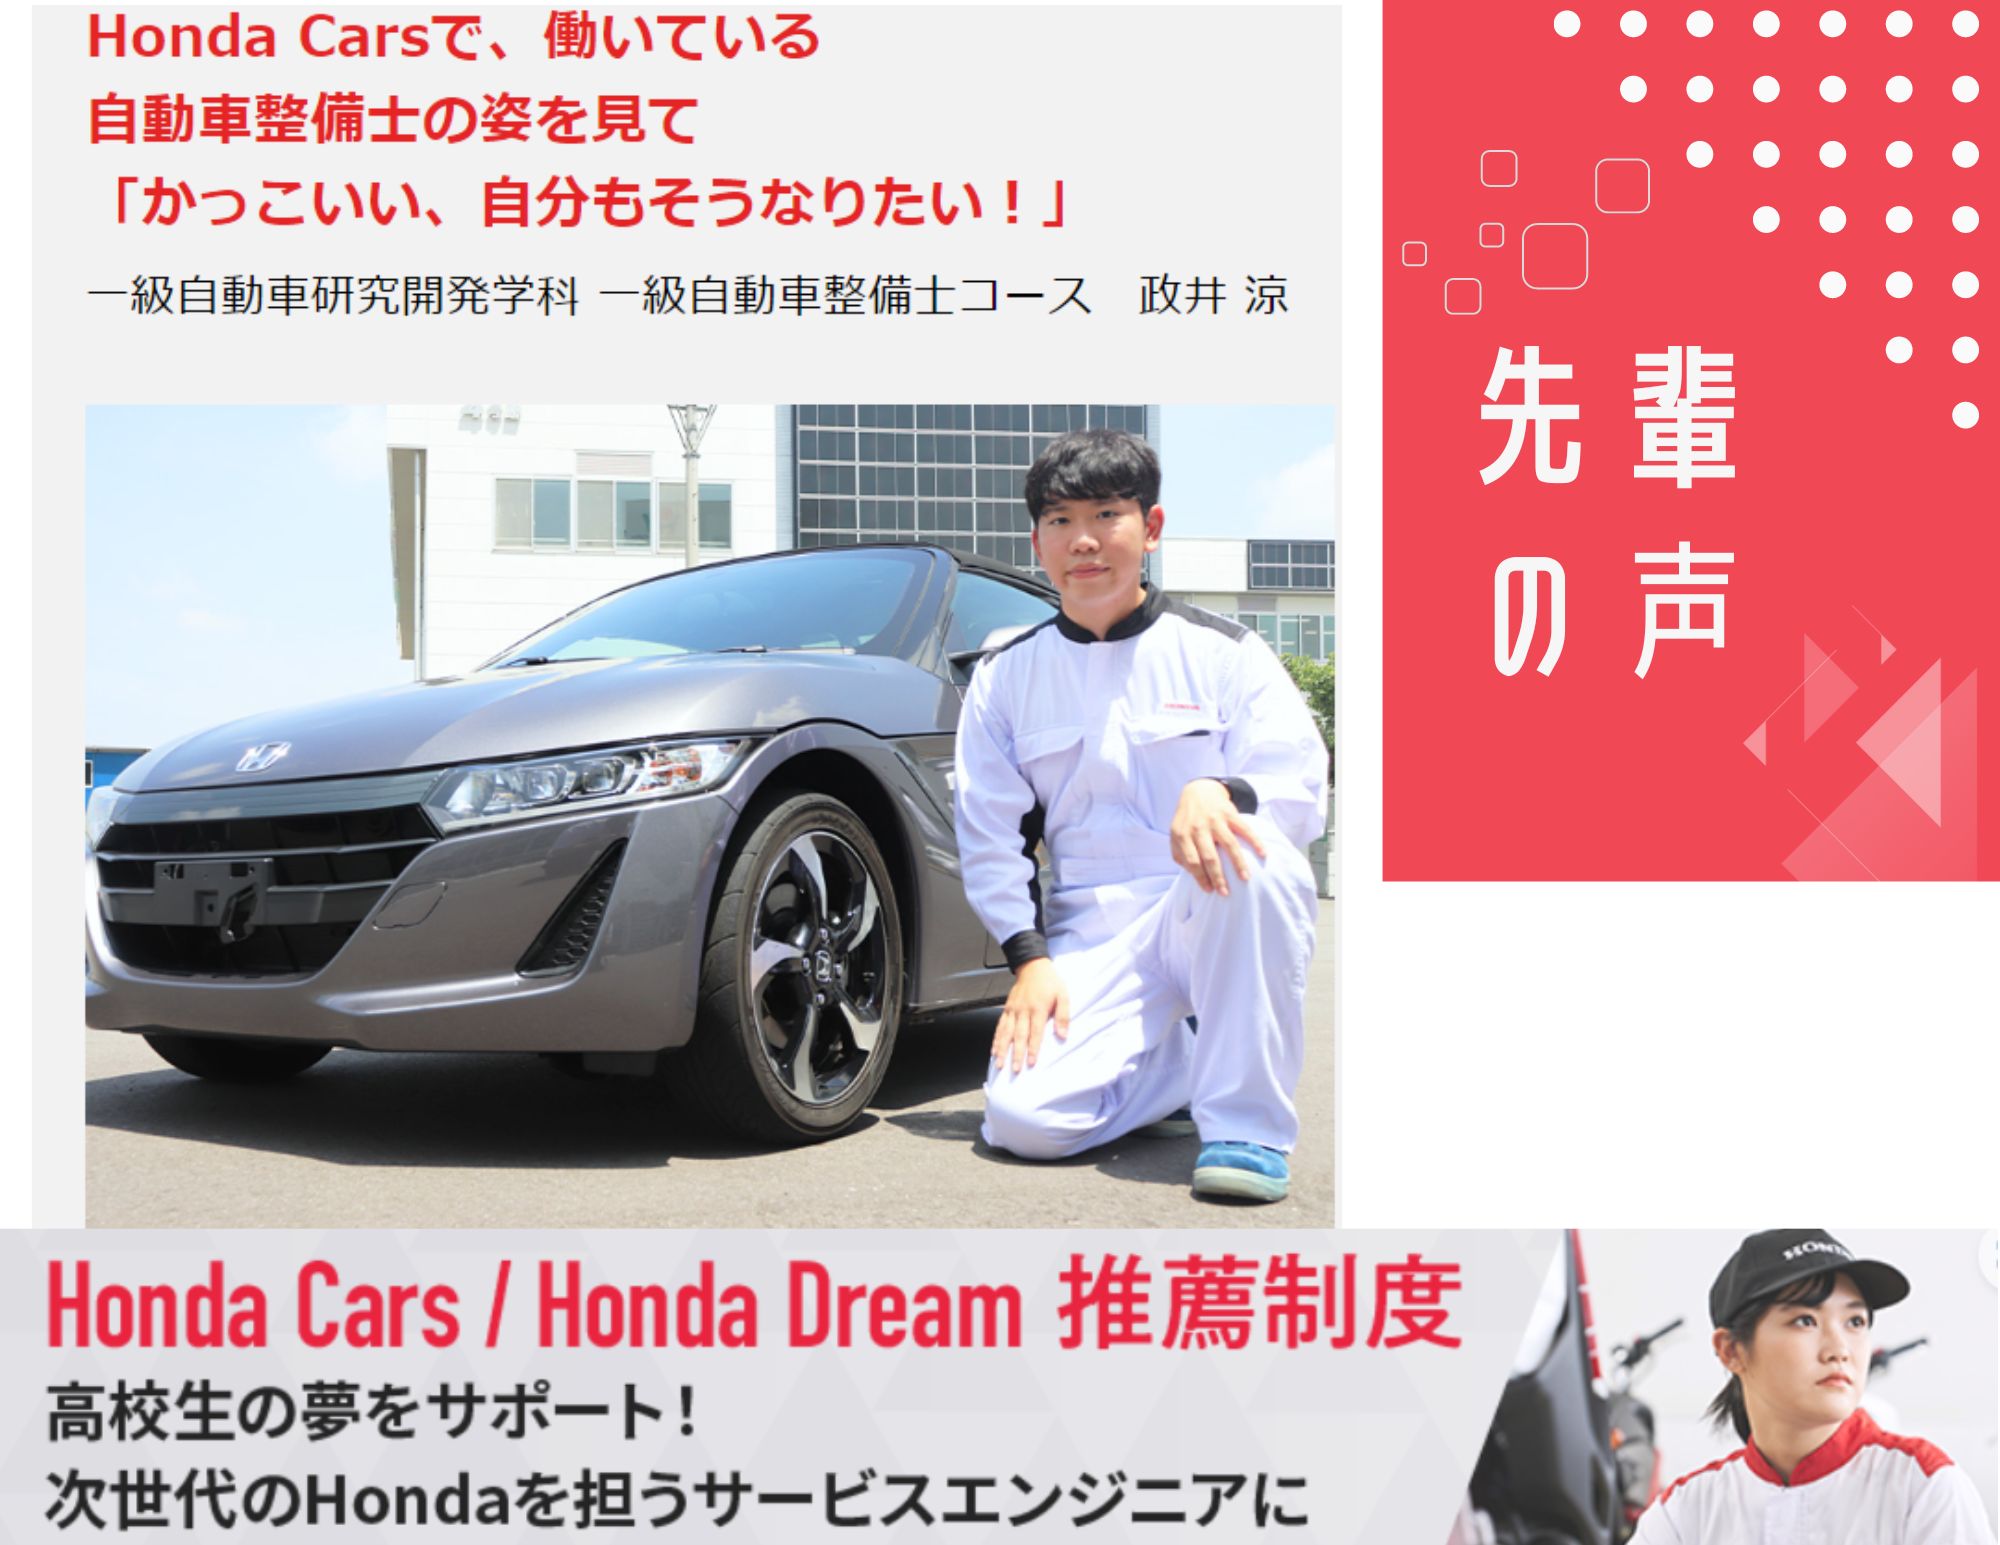 【先輩の声】私が 「Honda Cars 推薦制度」を選んだ理由